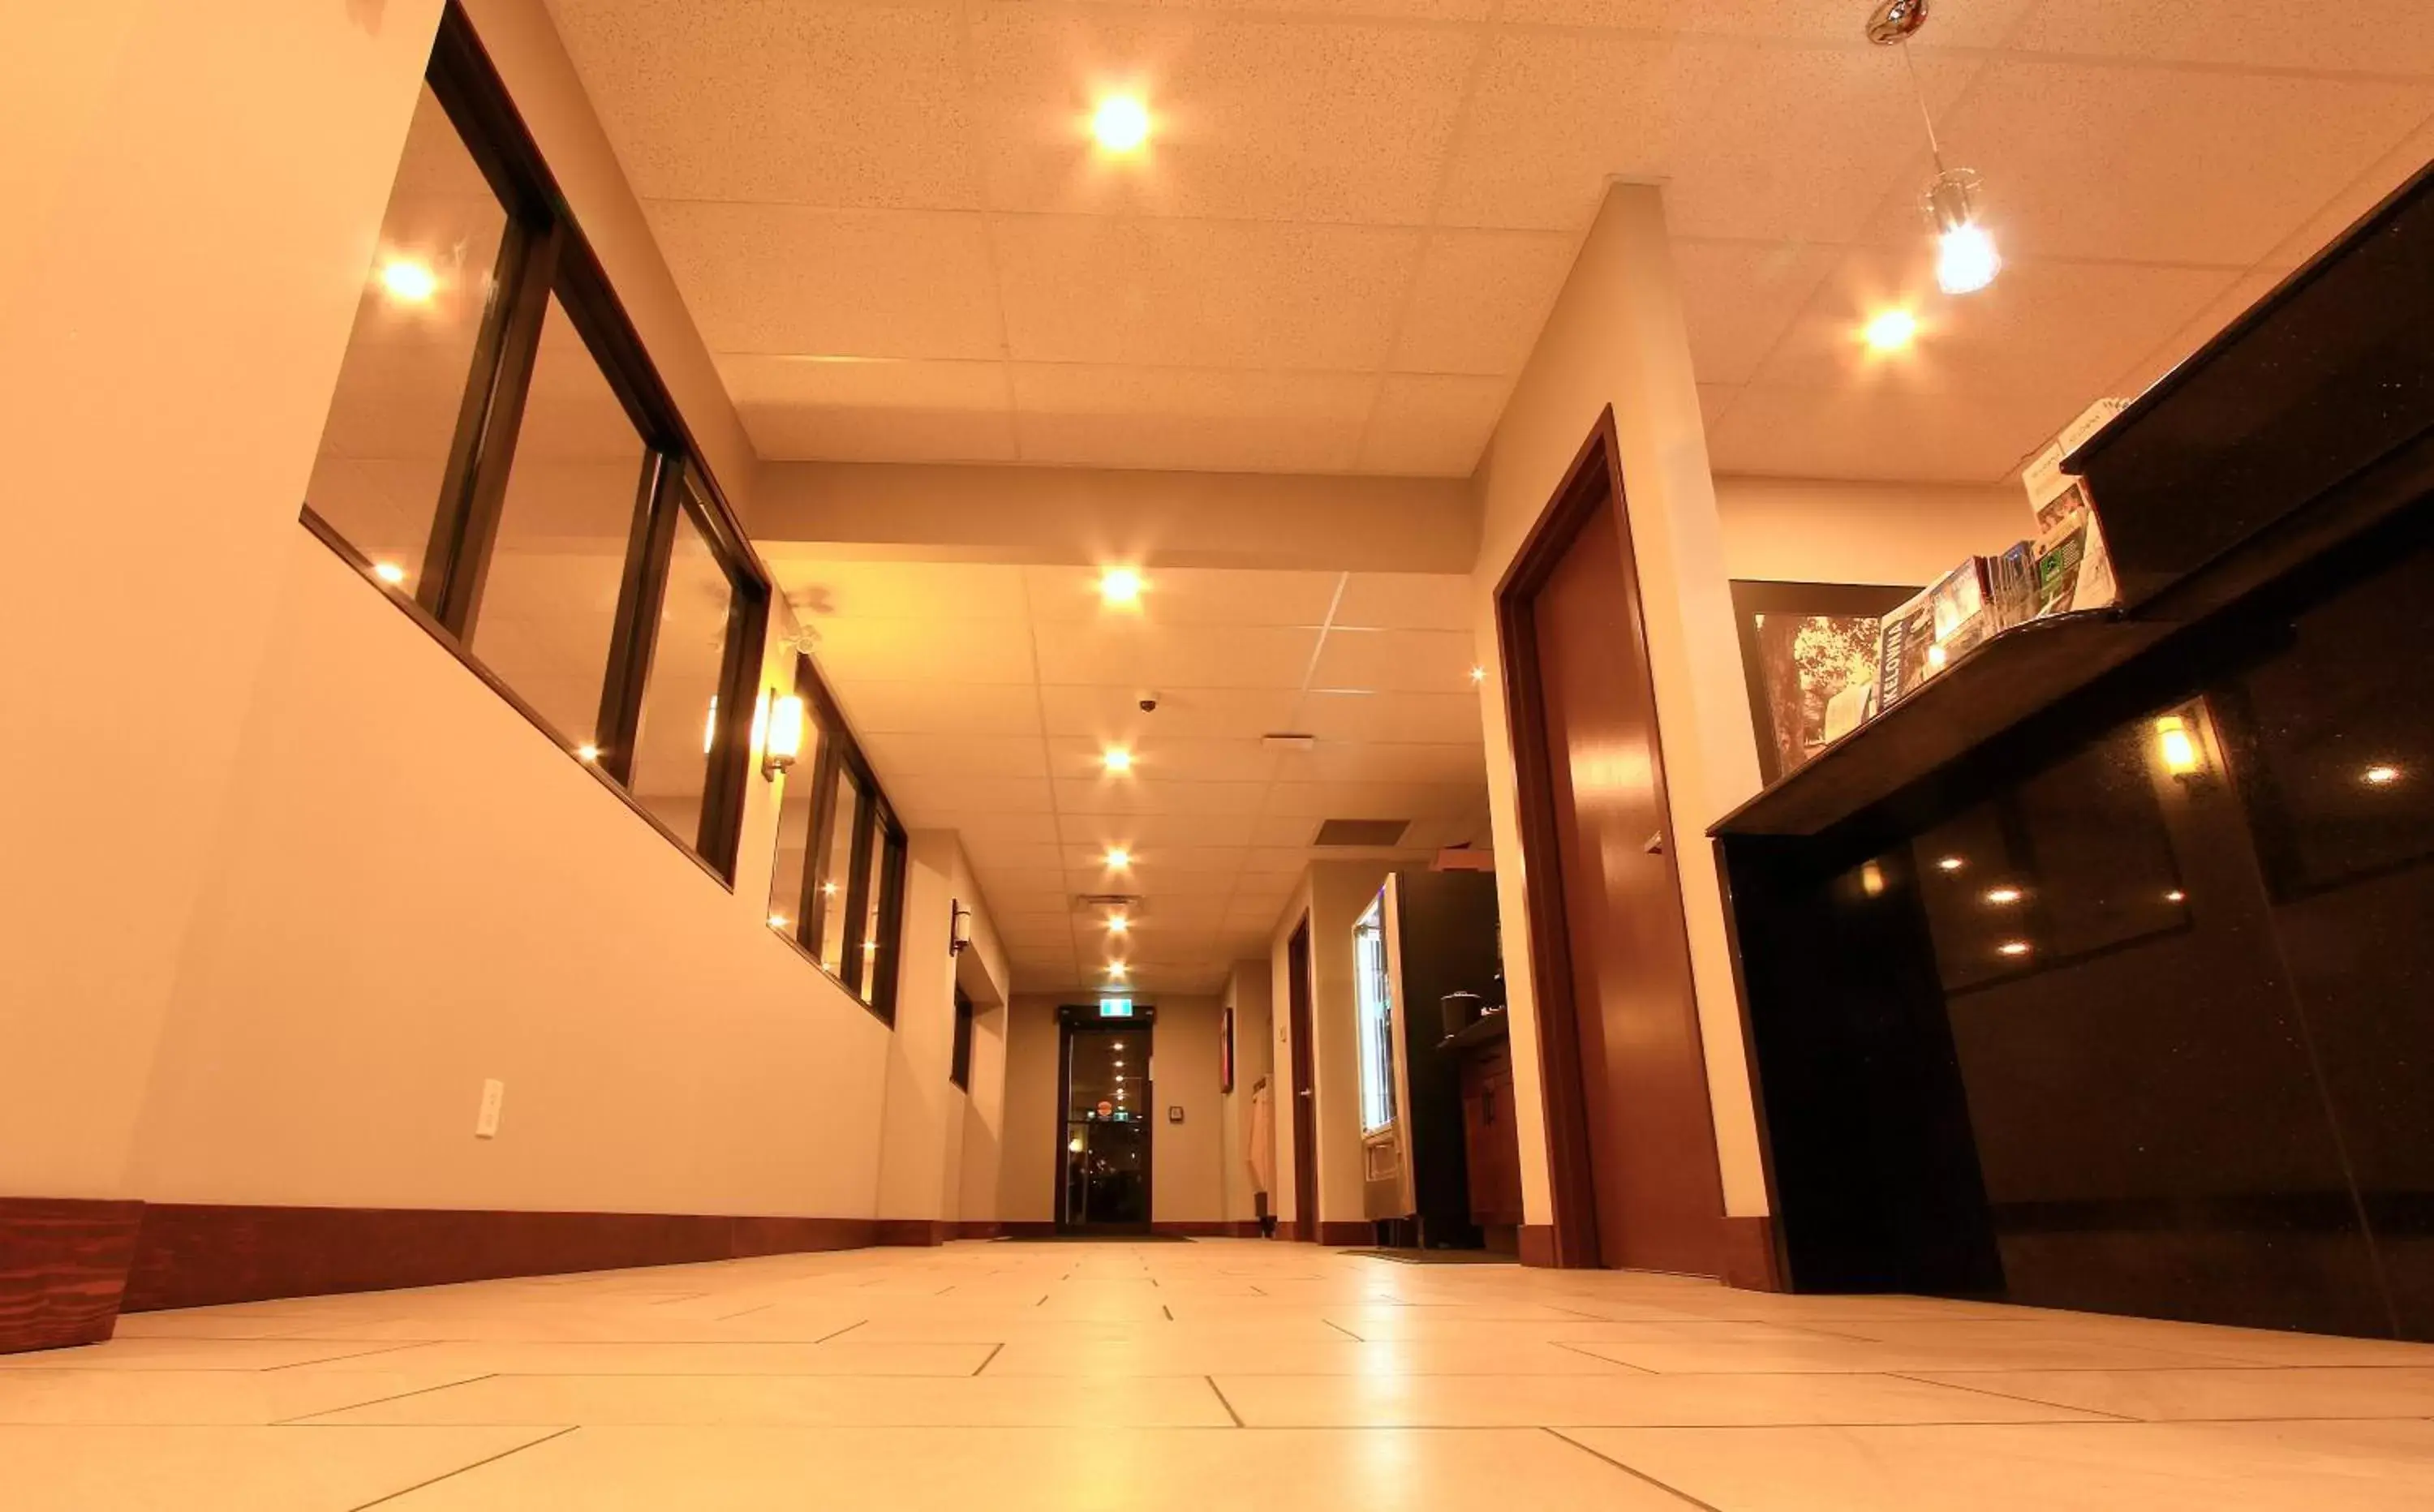 Lobby or reception, Lobby/Reception in Super 8 by Wyndham Kelowna BC